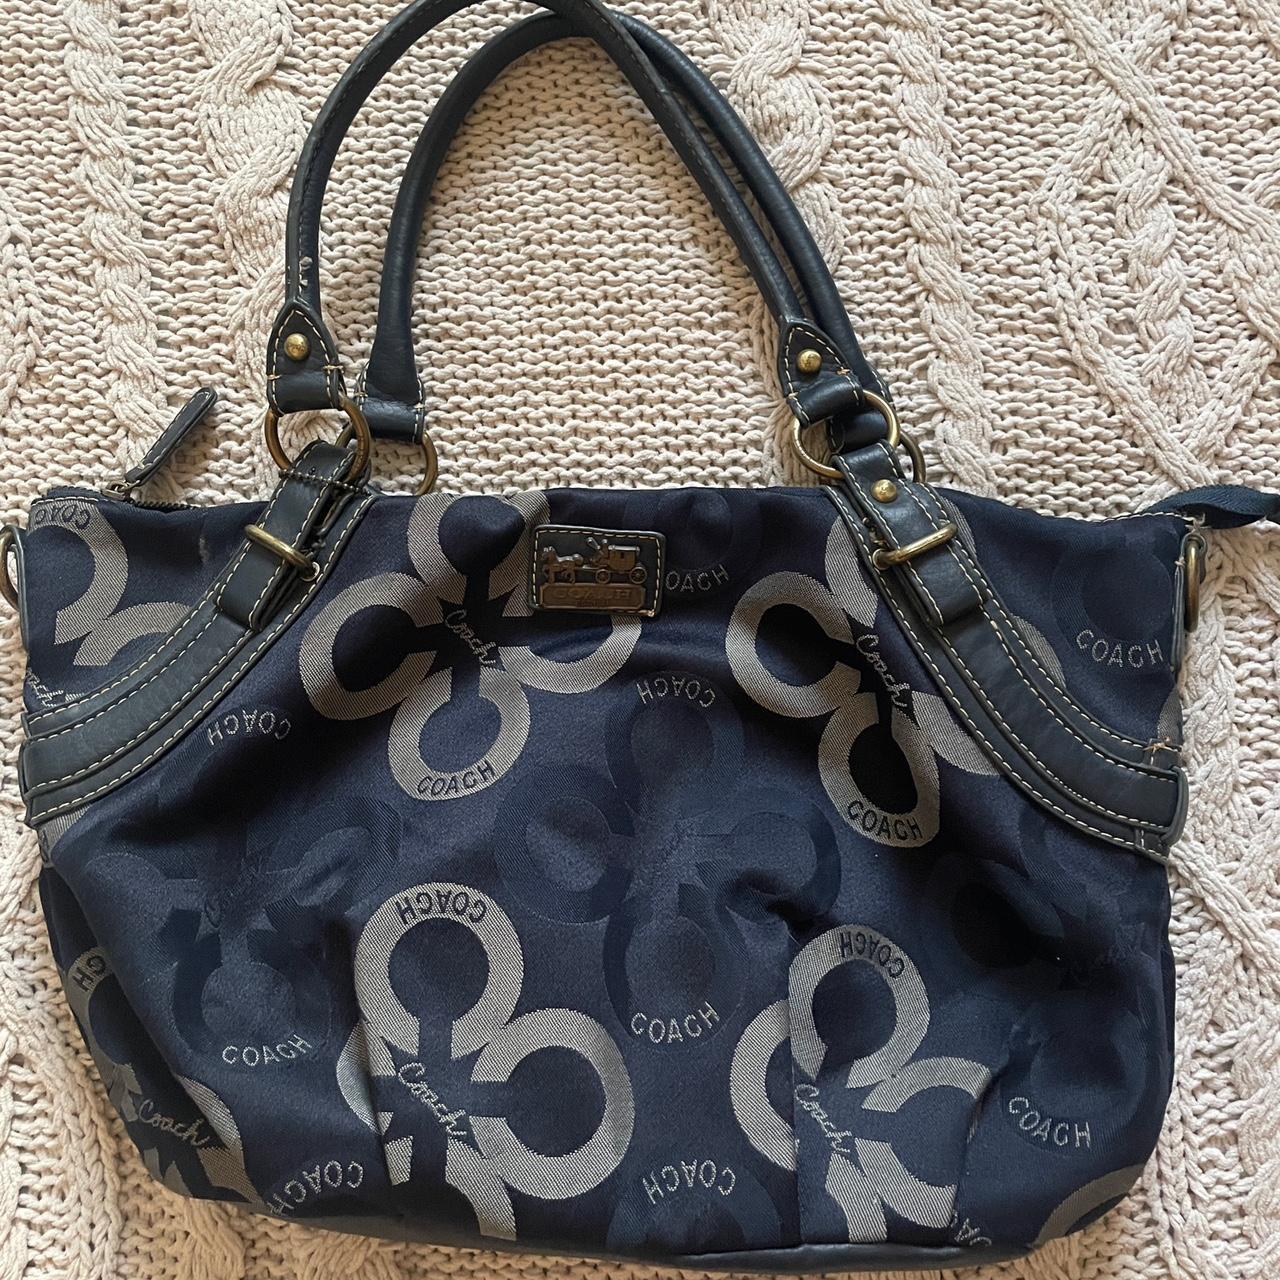 Coach Poppy Navy Blue Crossbody Bag | eBay